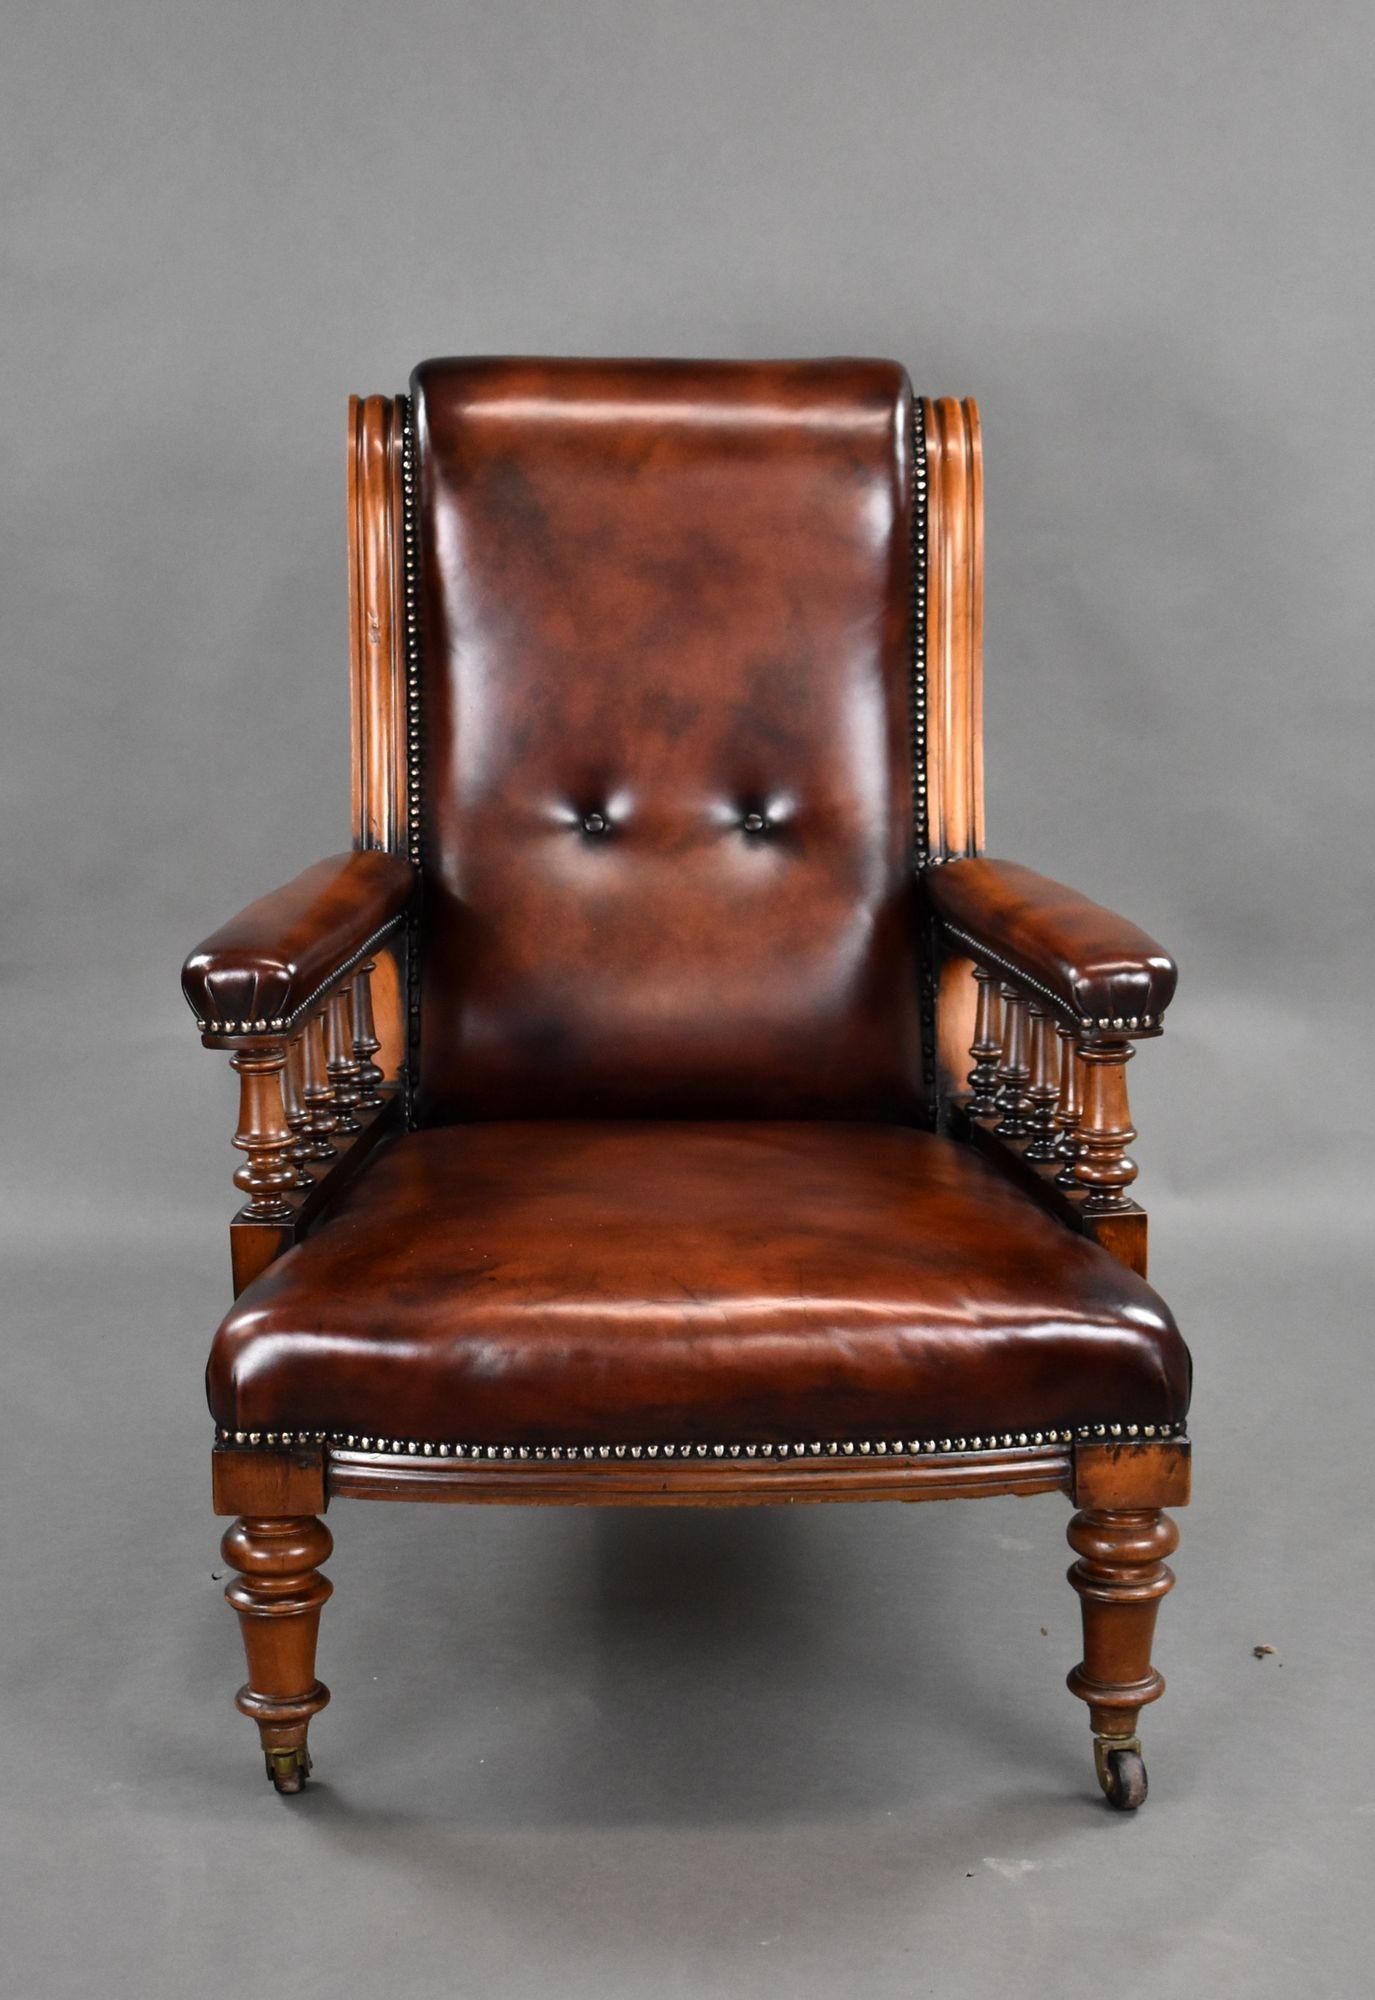 Zum Verkauf steht ein hochwertiger viktorianischer Bibliothekssessel aus handgefärbtem Leder, der eine schön geformte Rückenlehne mit zwei schwebenden Knöpfen hat. Die Armlehnen haben gedrechselte Spindelstützen und der Stuhl steht auf gedrechselten